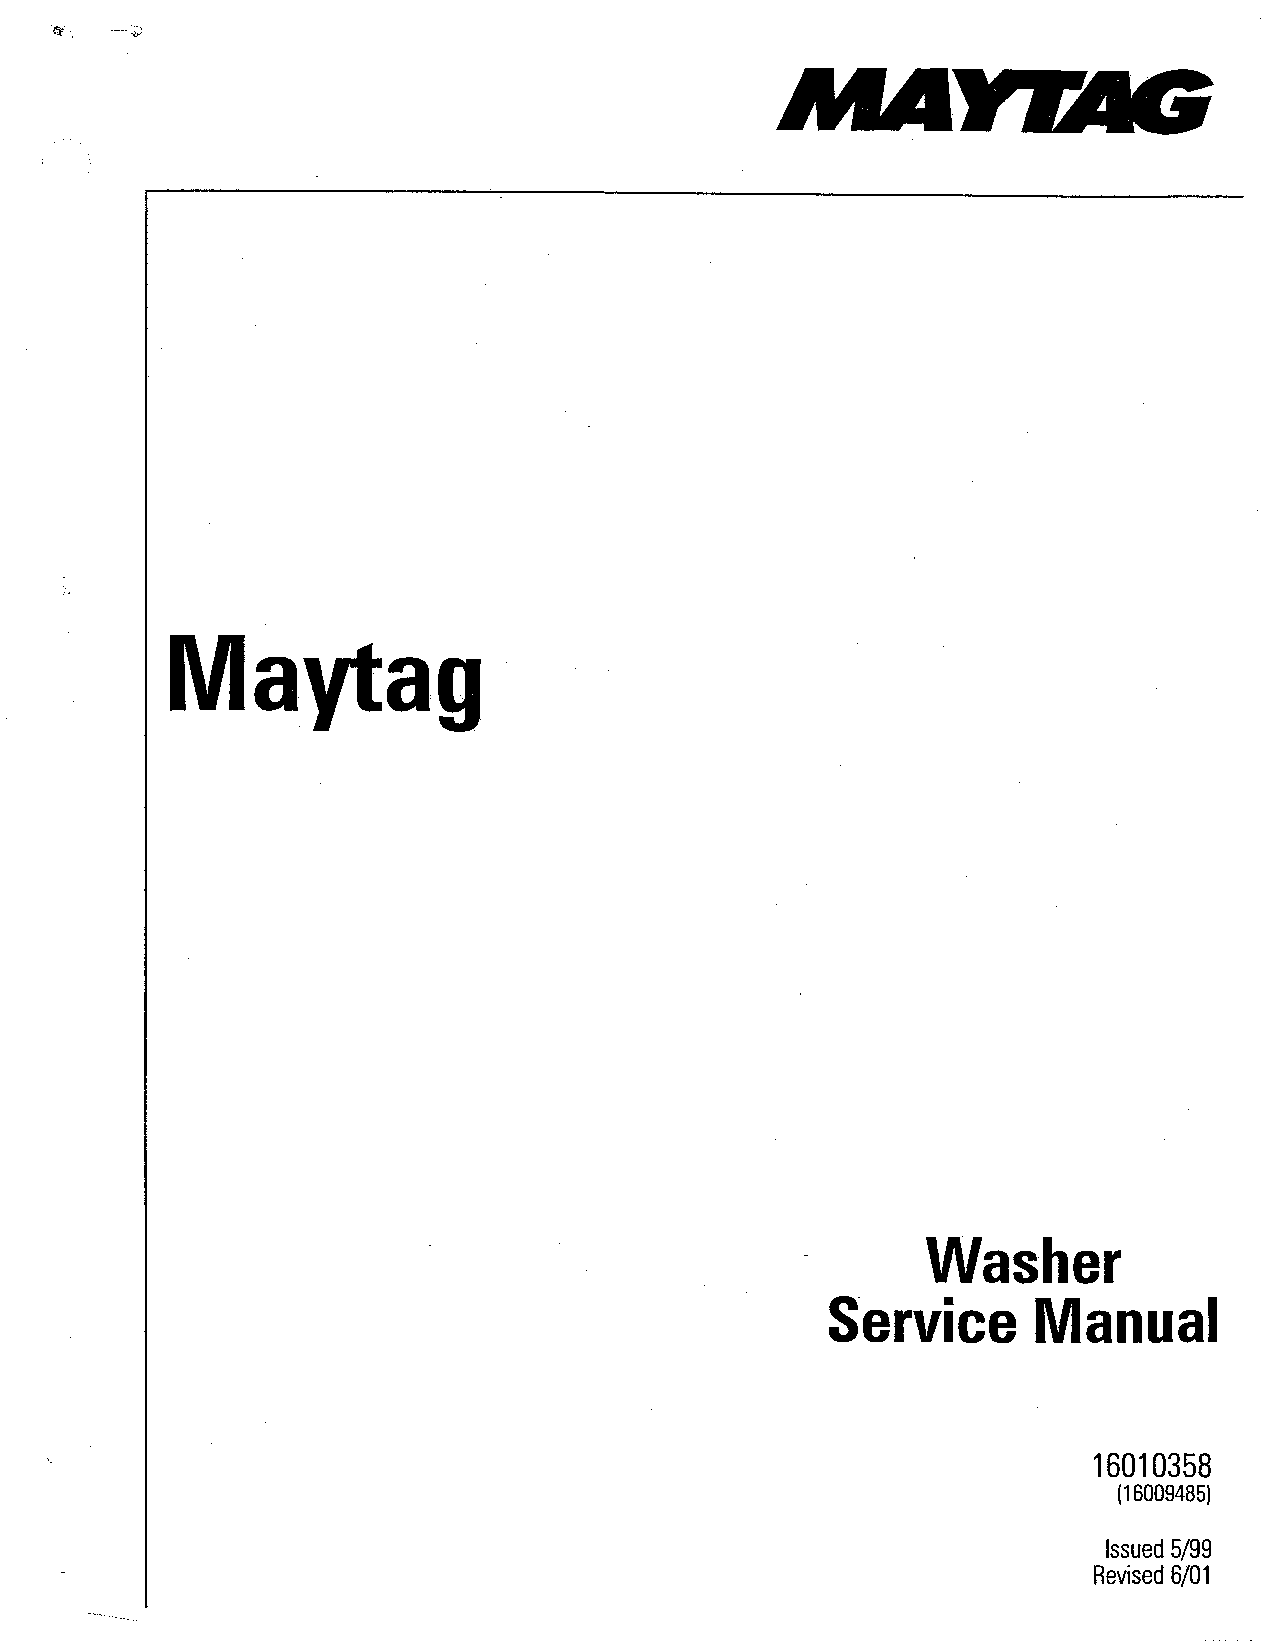 Maytag MAV8500, MAV7600, MAV8000, MAV6257, MAV4500 User Manual